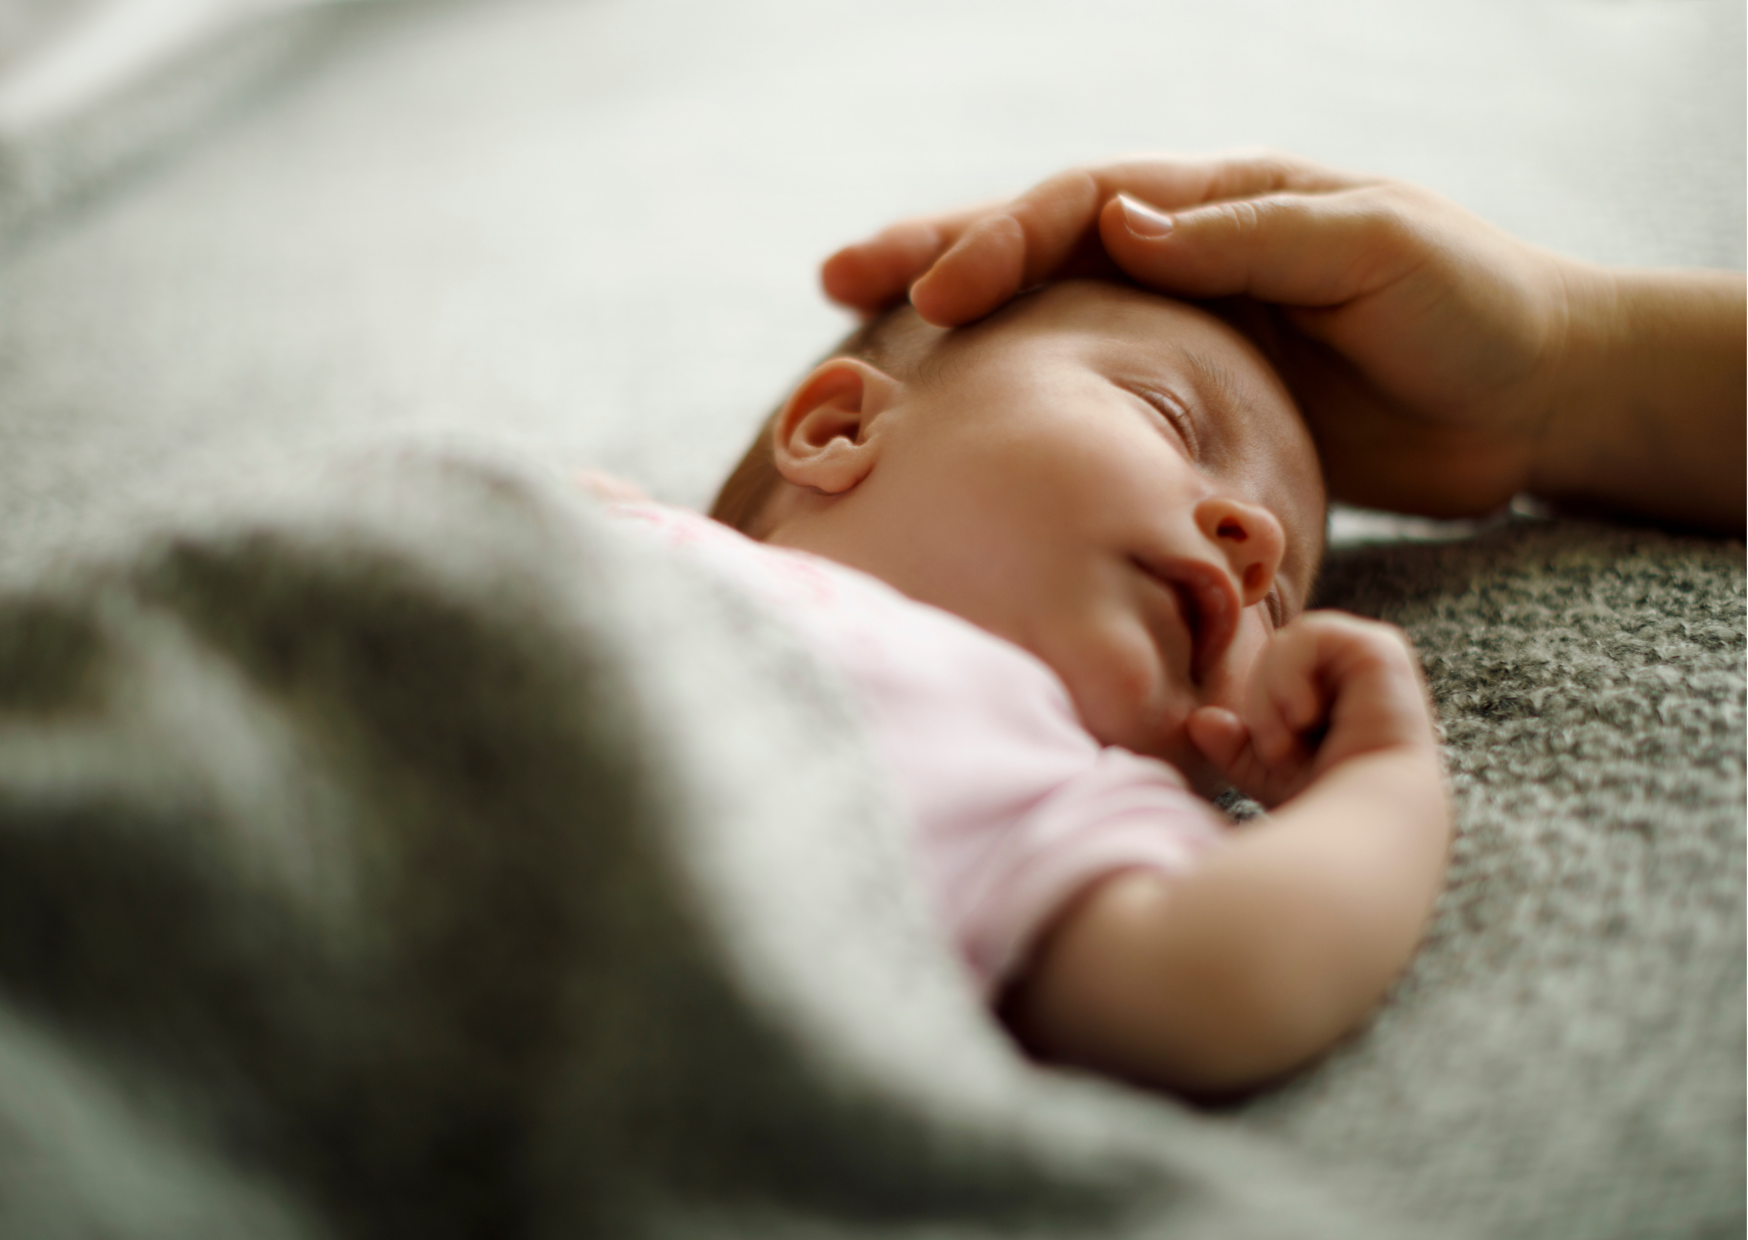 Ratgeber Bilder - neugeboren 2 wochen alt